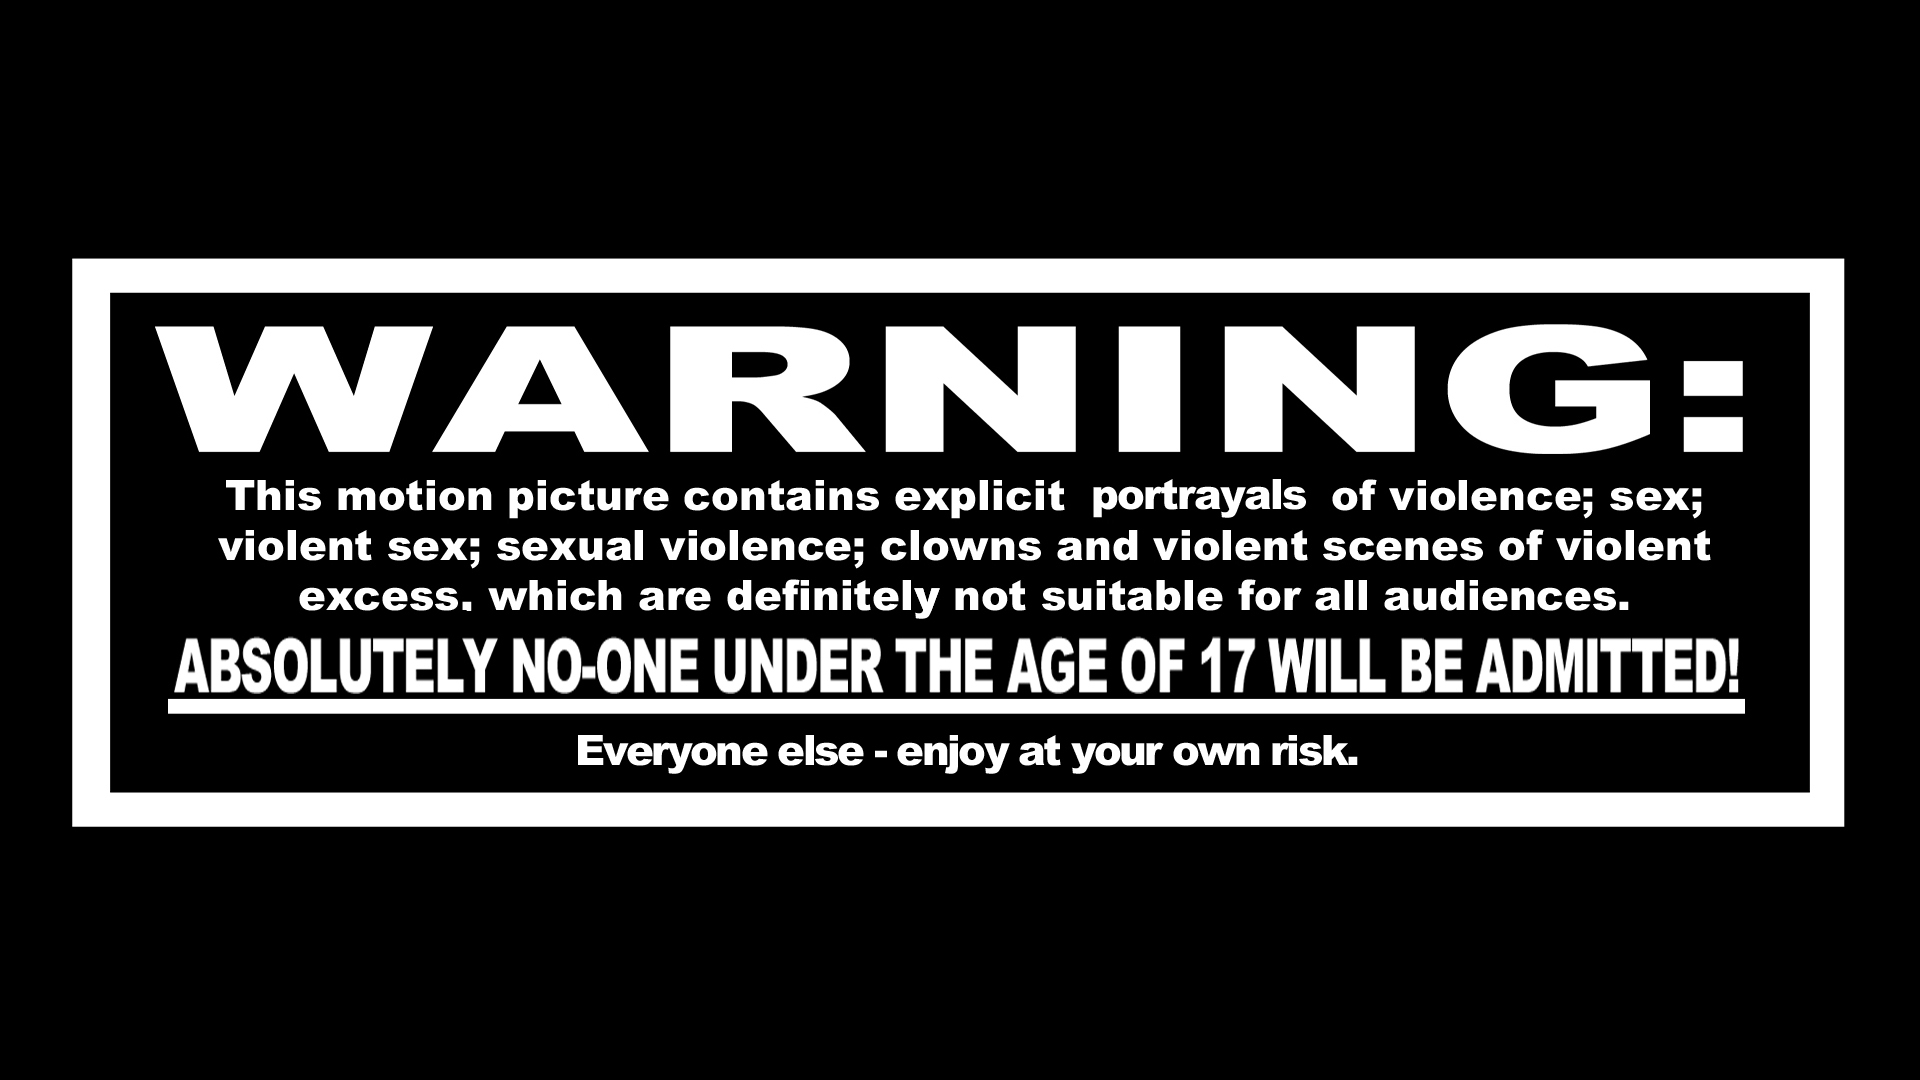 Wallpaper - Warning Movie Text - 1920x1080 Wallpaper 